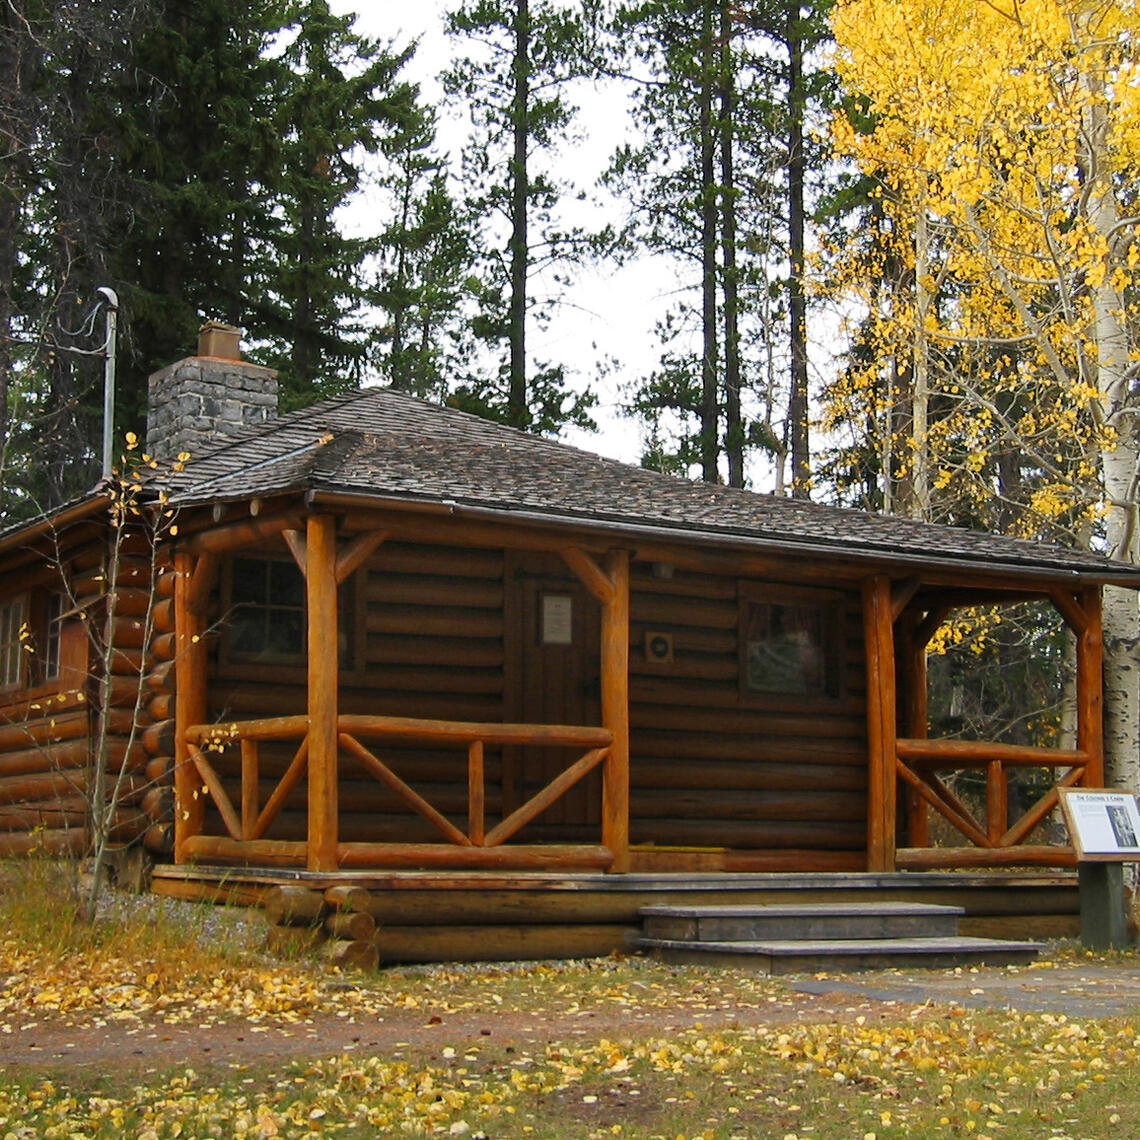 Colonel's cabin